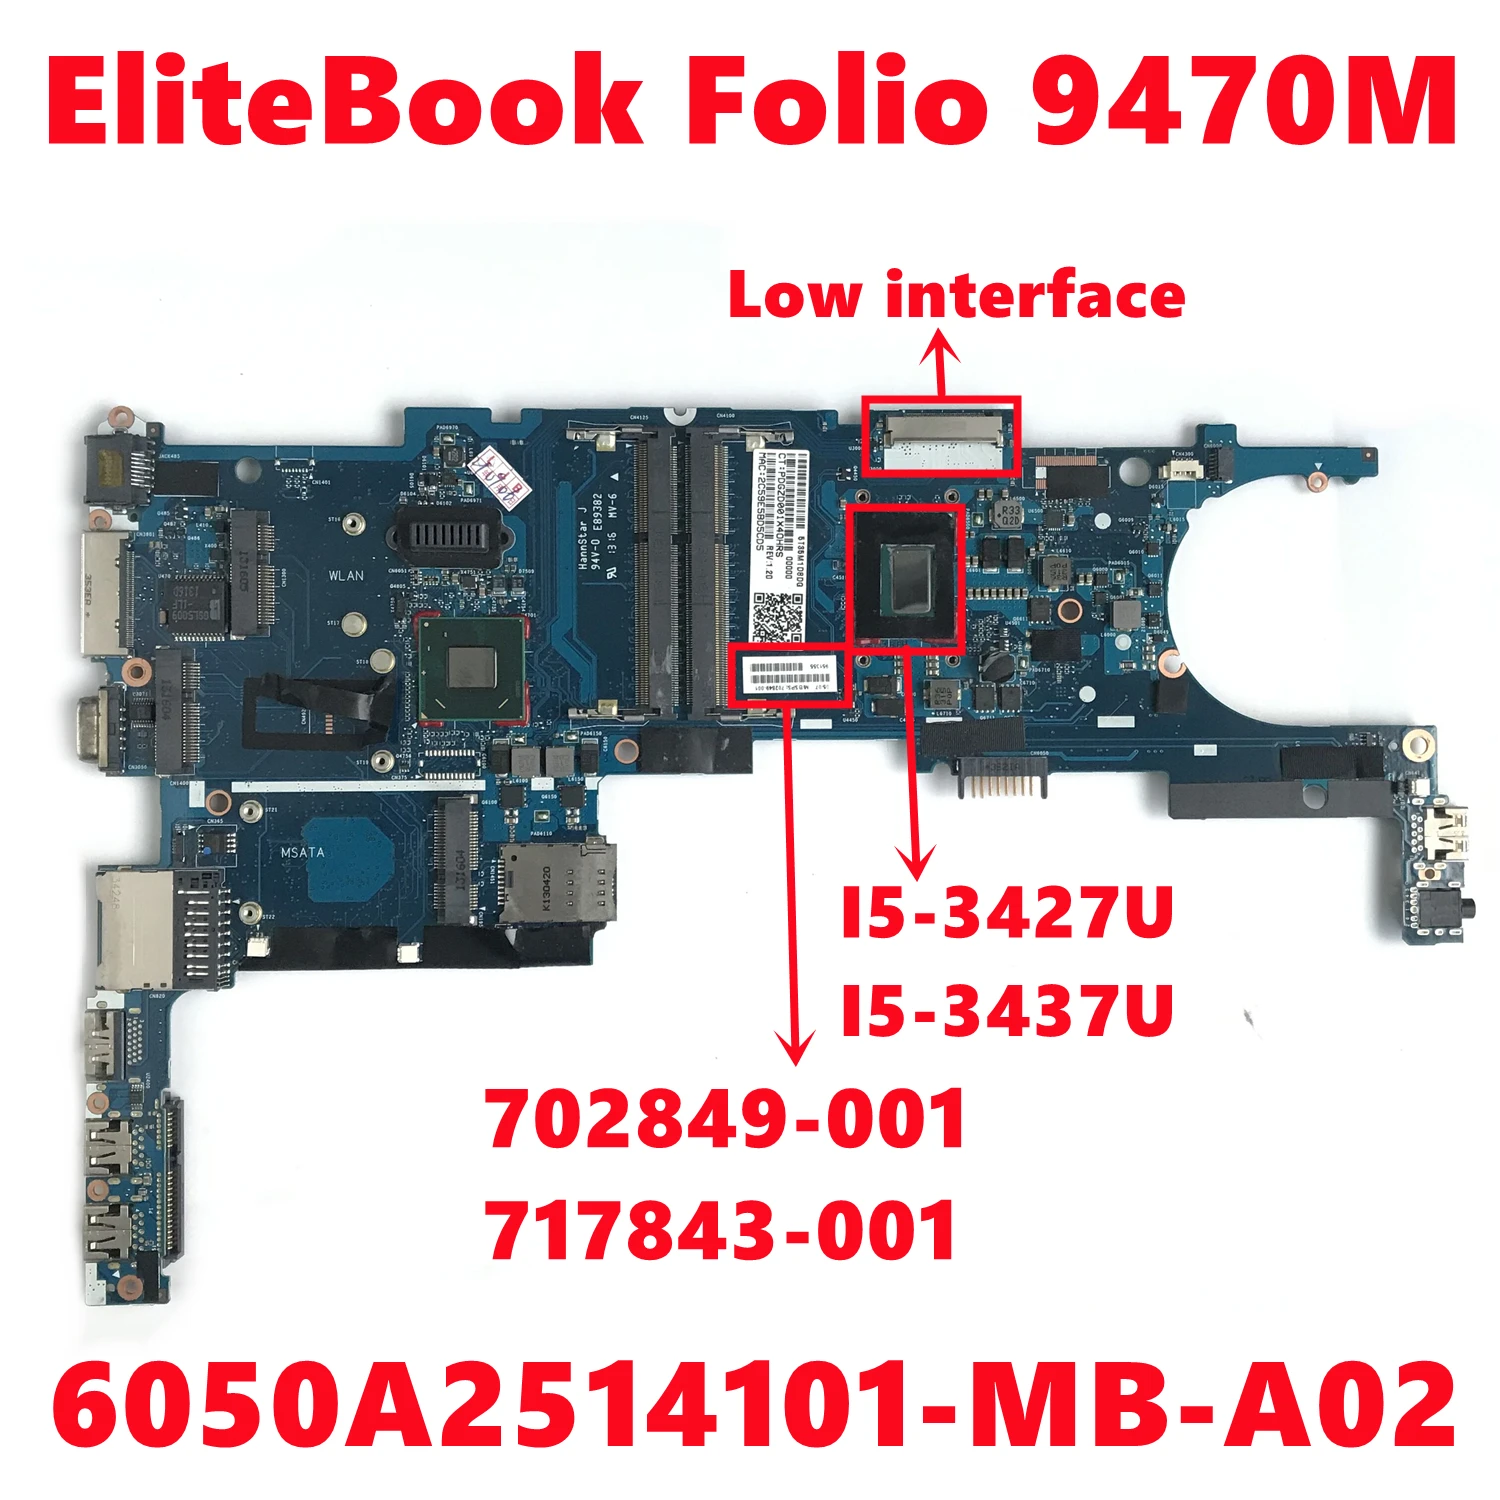 702849-001 717843-001   HP EliteBook Folio 9470M,   6050A2514101-MB-A02  I5-3427U DDR3 100%, 